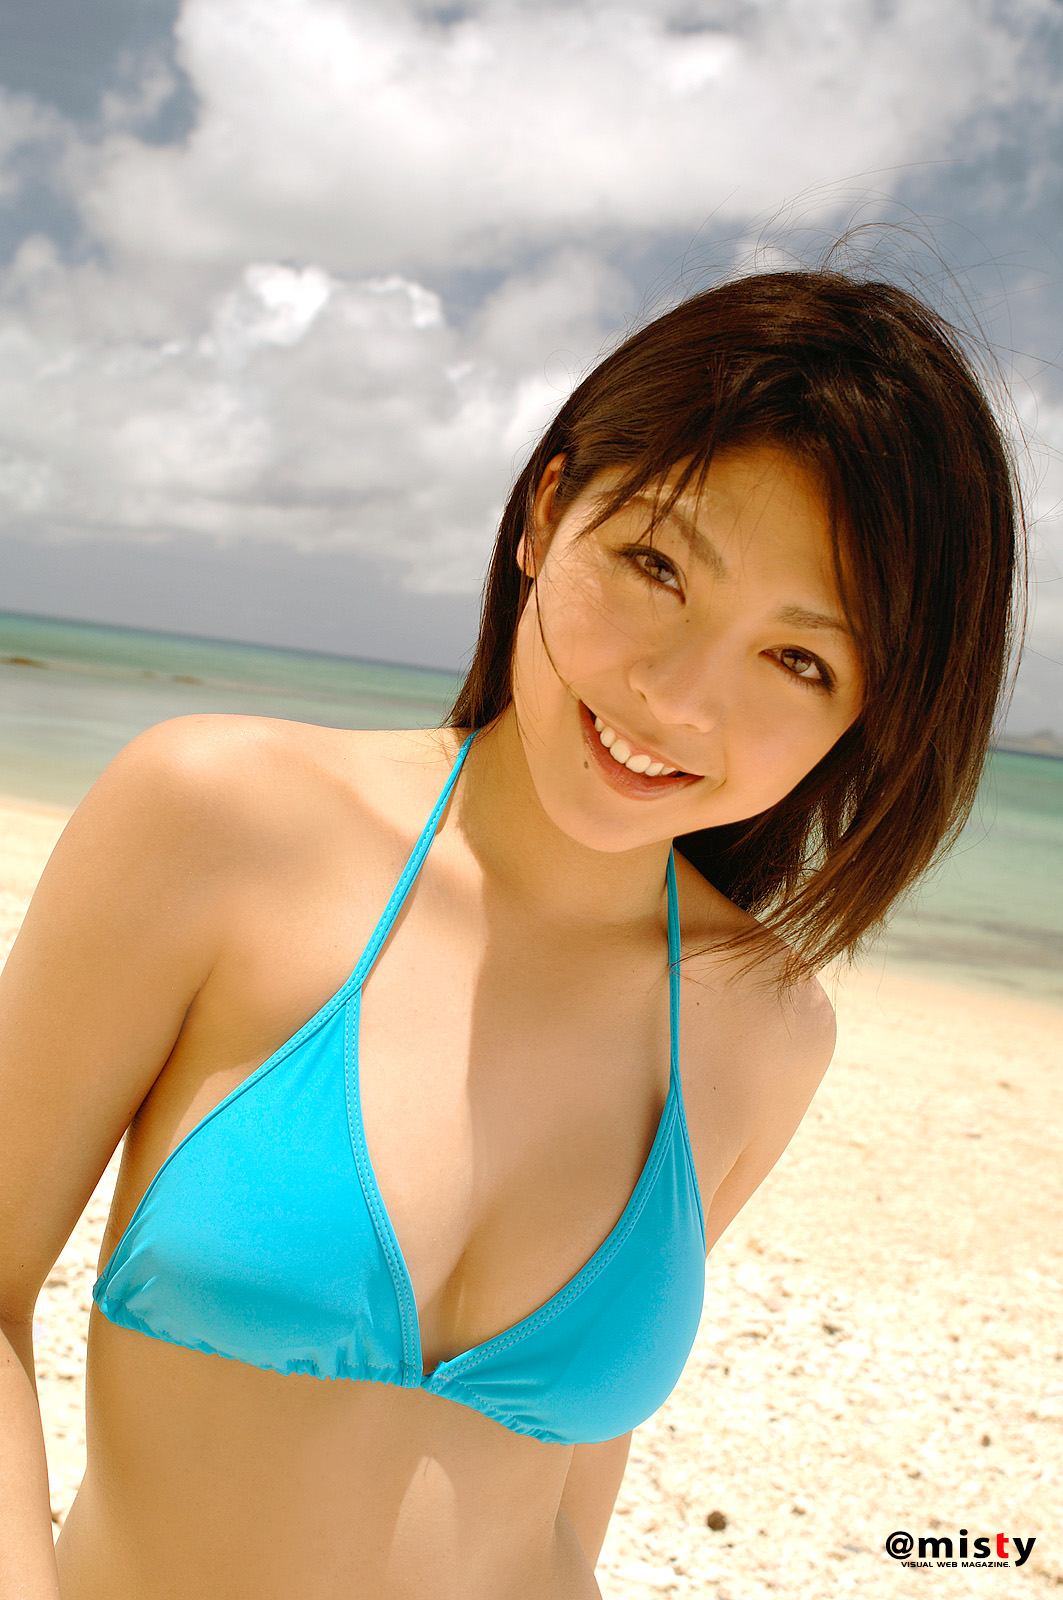 Sakura Sato blue bikini on the beach.